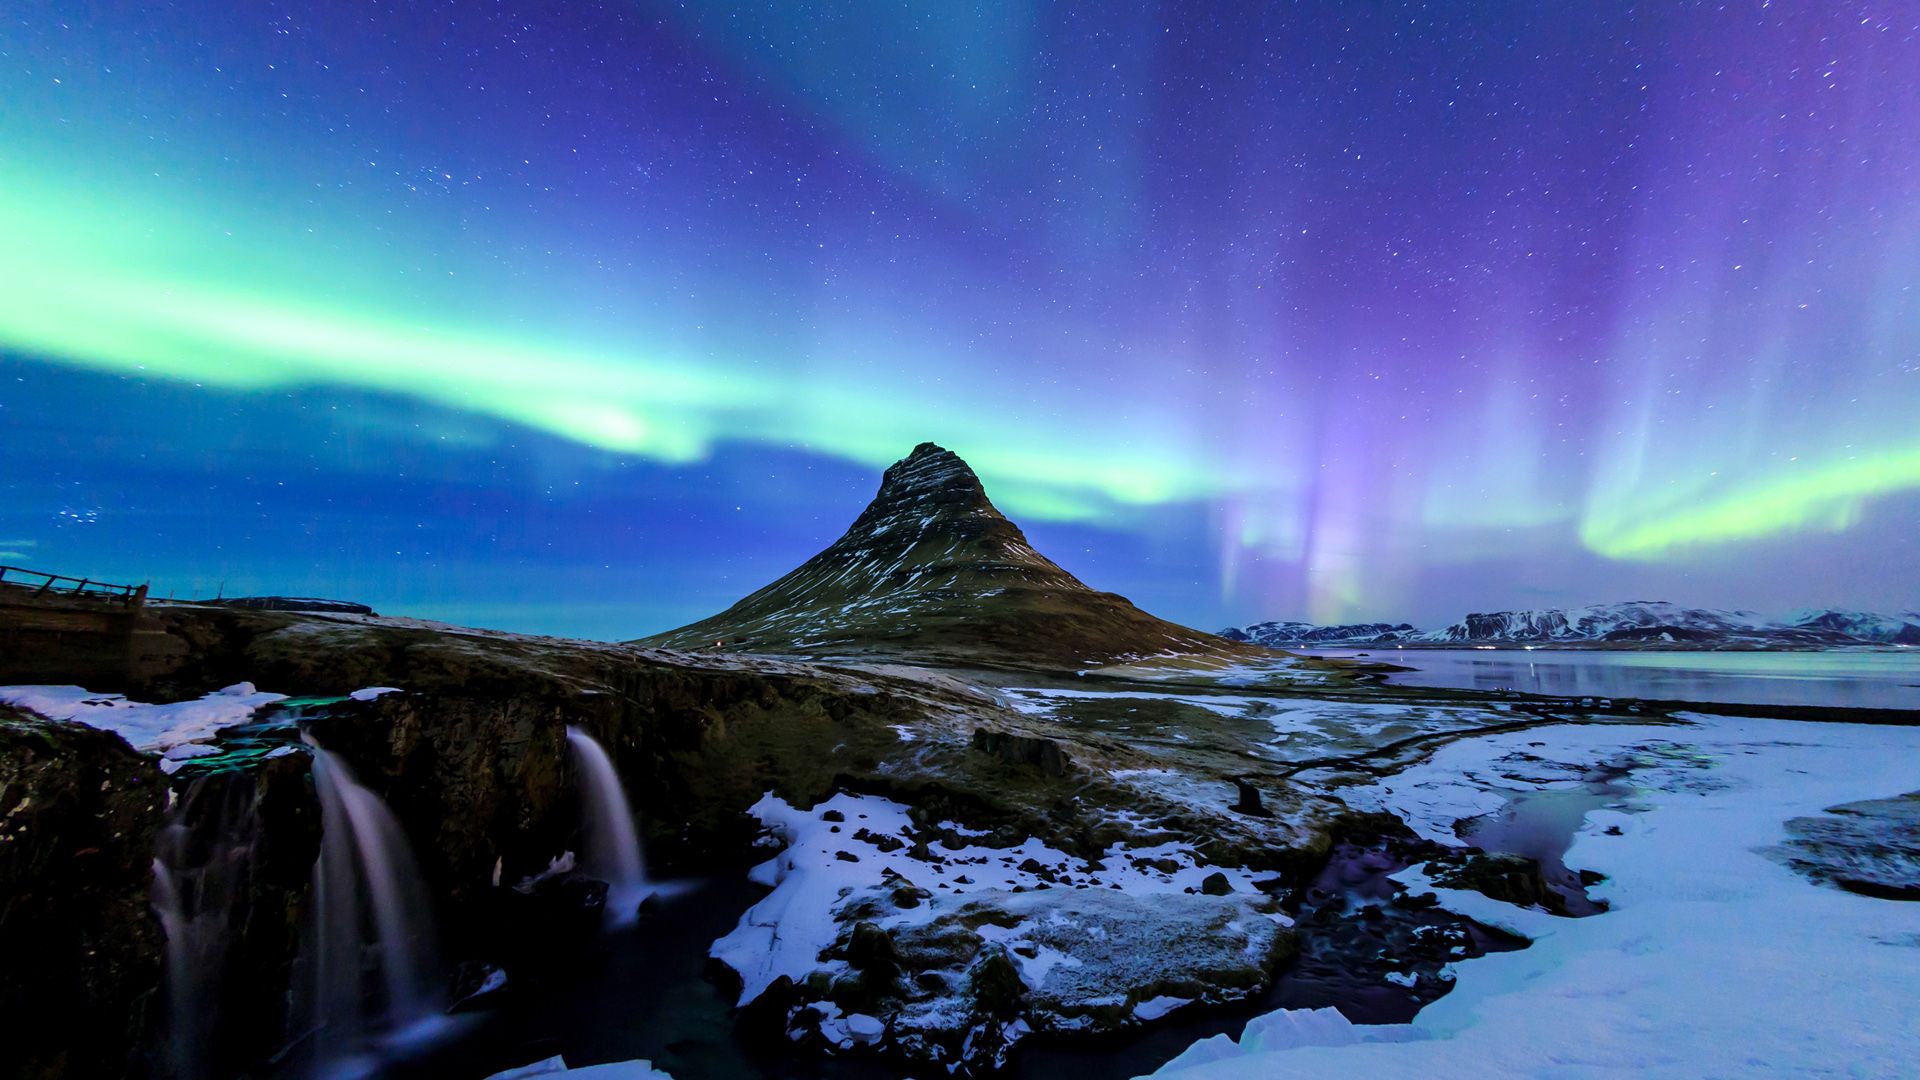 冰岛,晚上,星星,天空,北极光,瀑布,冬季,雪山,风景桌面壁纸